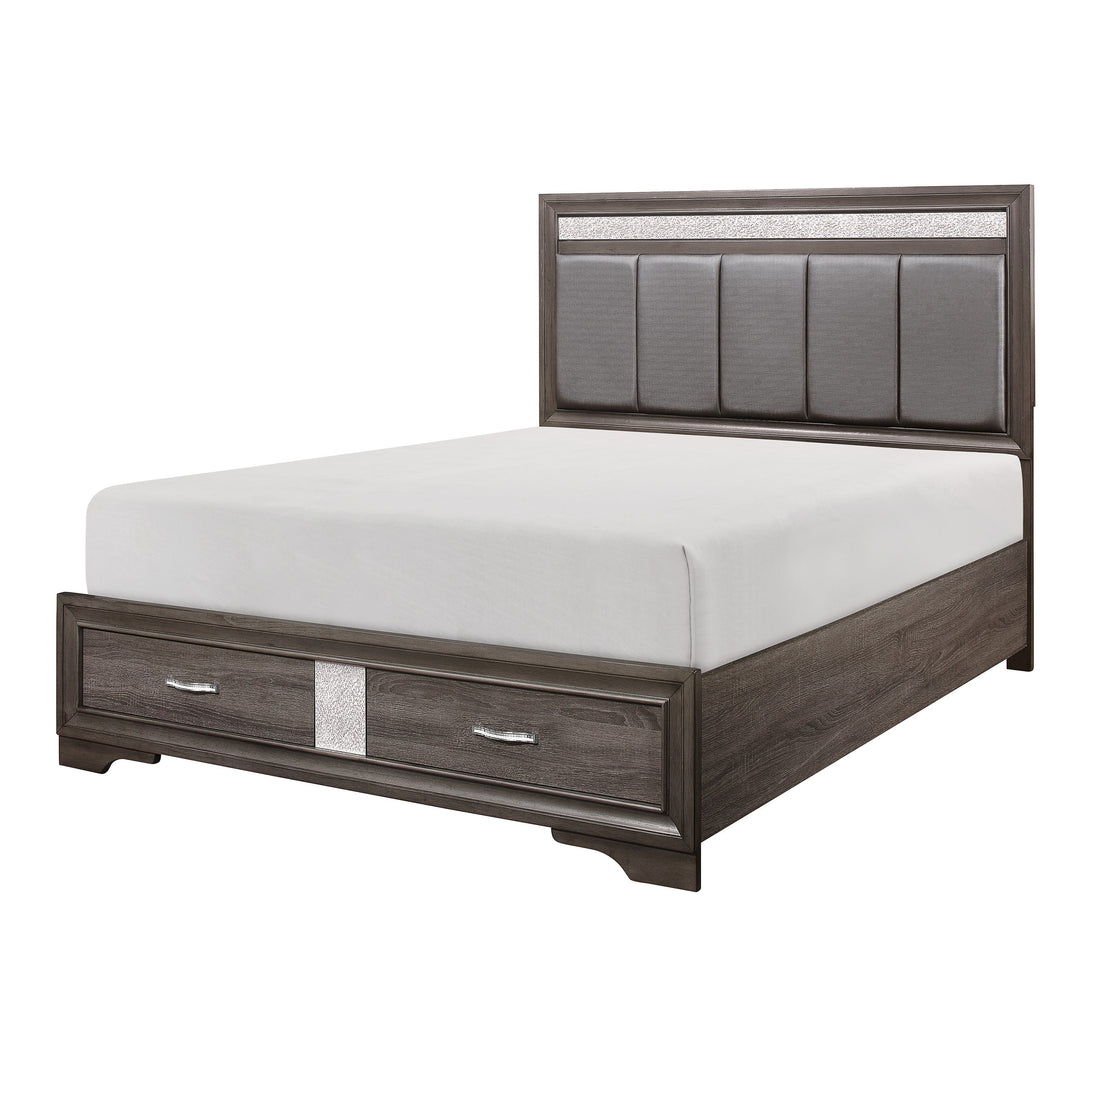 Luster Gray Upholstered Storage Platform Bedroom Set - SET | 1505K-1 | 1505K-3EK | 1505-DW | 1505-5 | 1505-6 | 1505-4 | 1505-9 - Bien Home Furniture &amp; Electronics